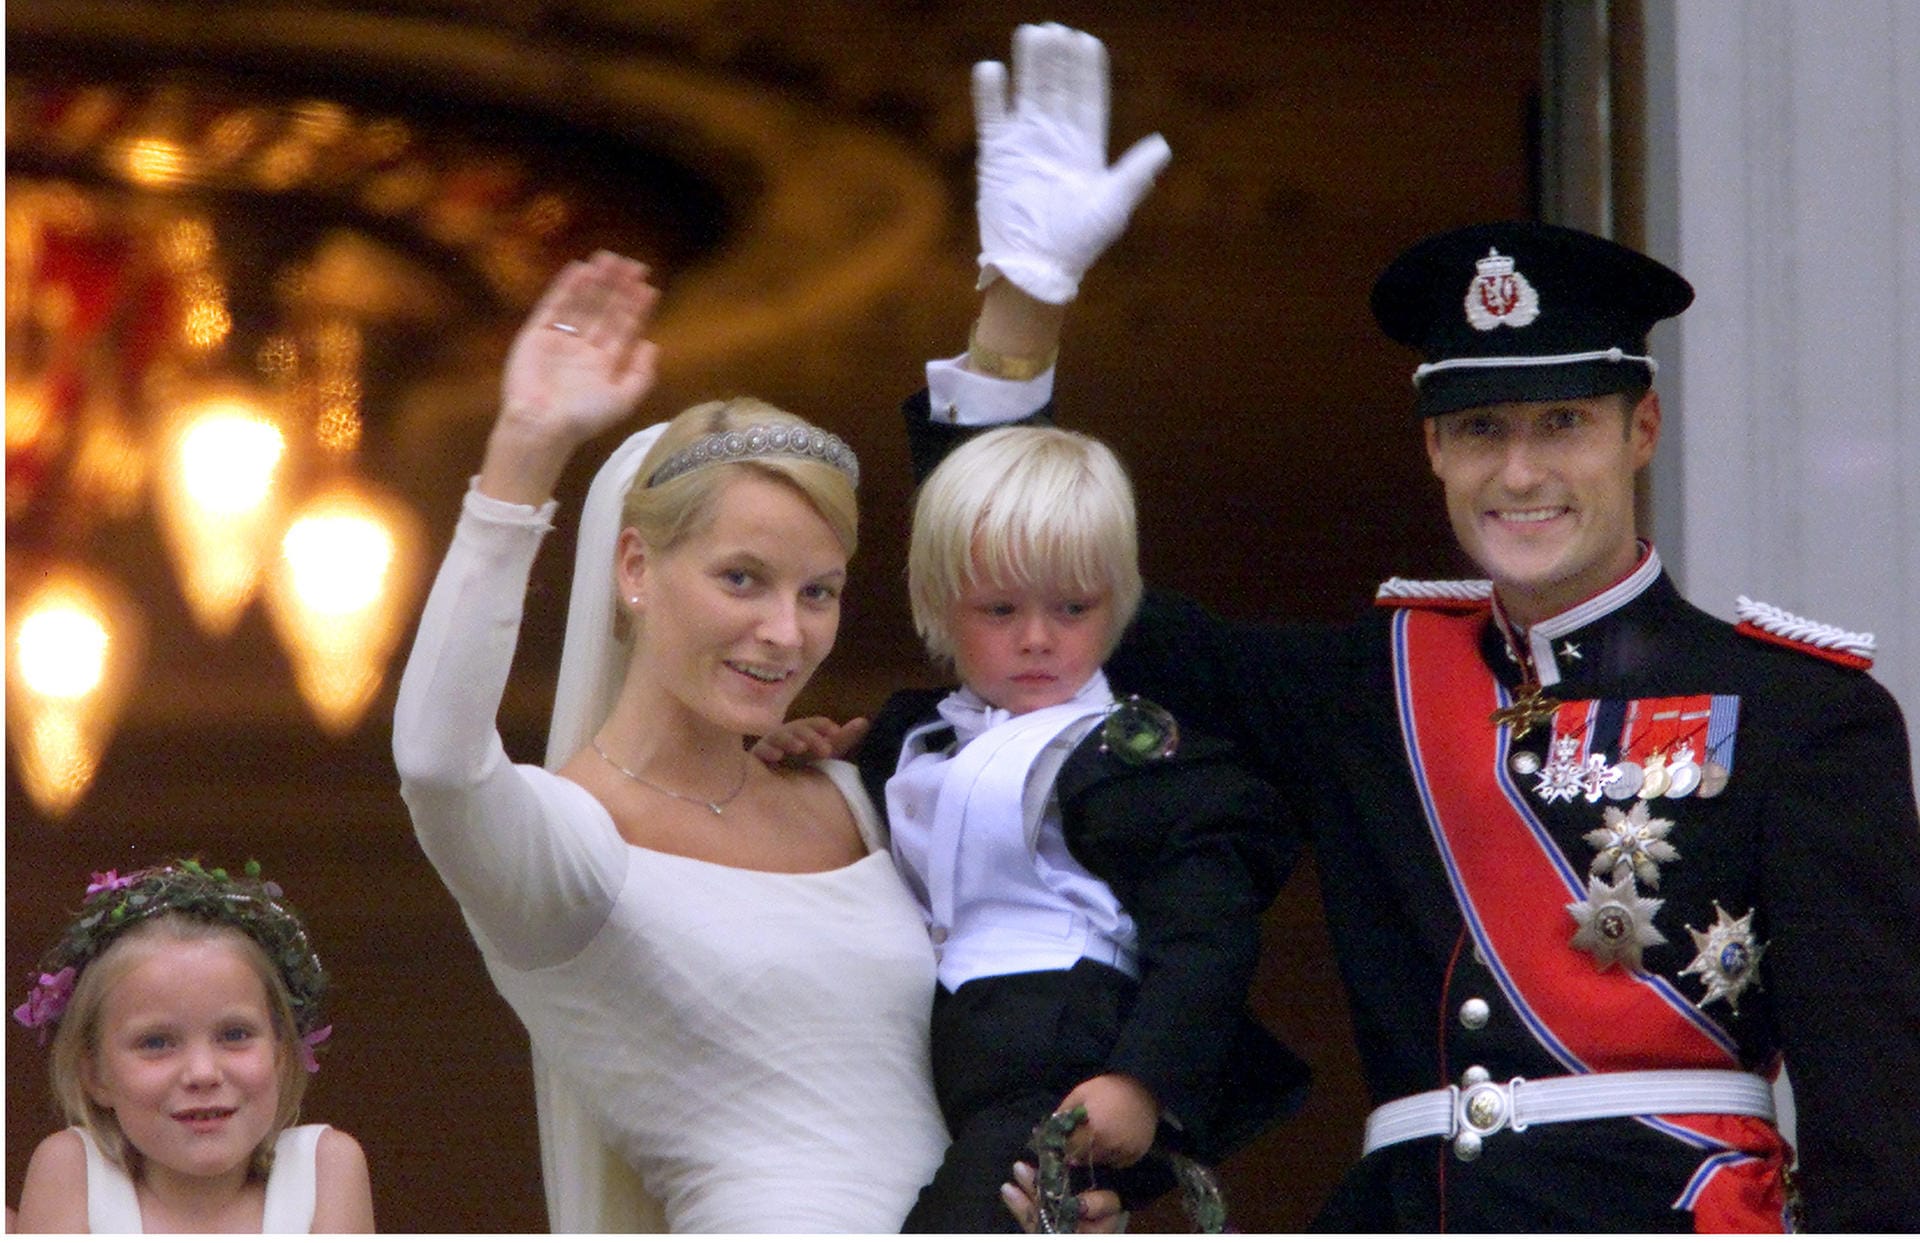 2001 heiratete der norwegische Thronfolger Prinz Haakon seine Traumfrau Mette-Marit. Doch obwohl die Braut bezaubernd aussah, gab es in Norwegen jede Menge Diskussionen um die Eheschließung. Schließlich war die hübsche Blondine nicht nur bürgerlich, sondern hatte bereits ein uneheliches Kind - und eine wilde Vergangenheit.